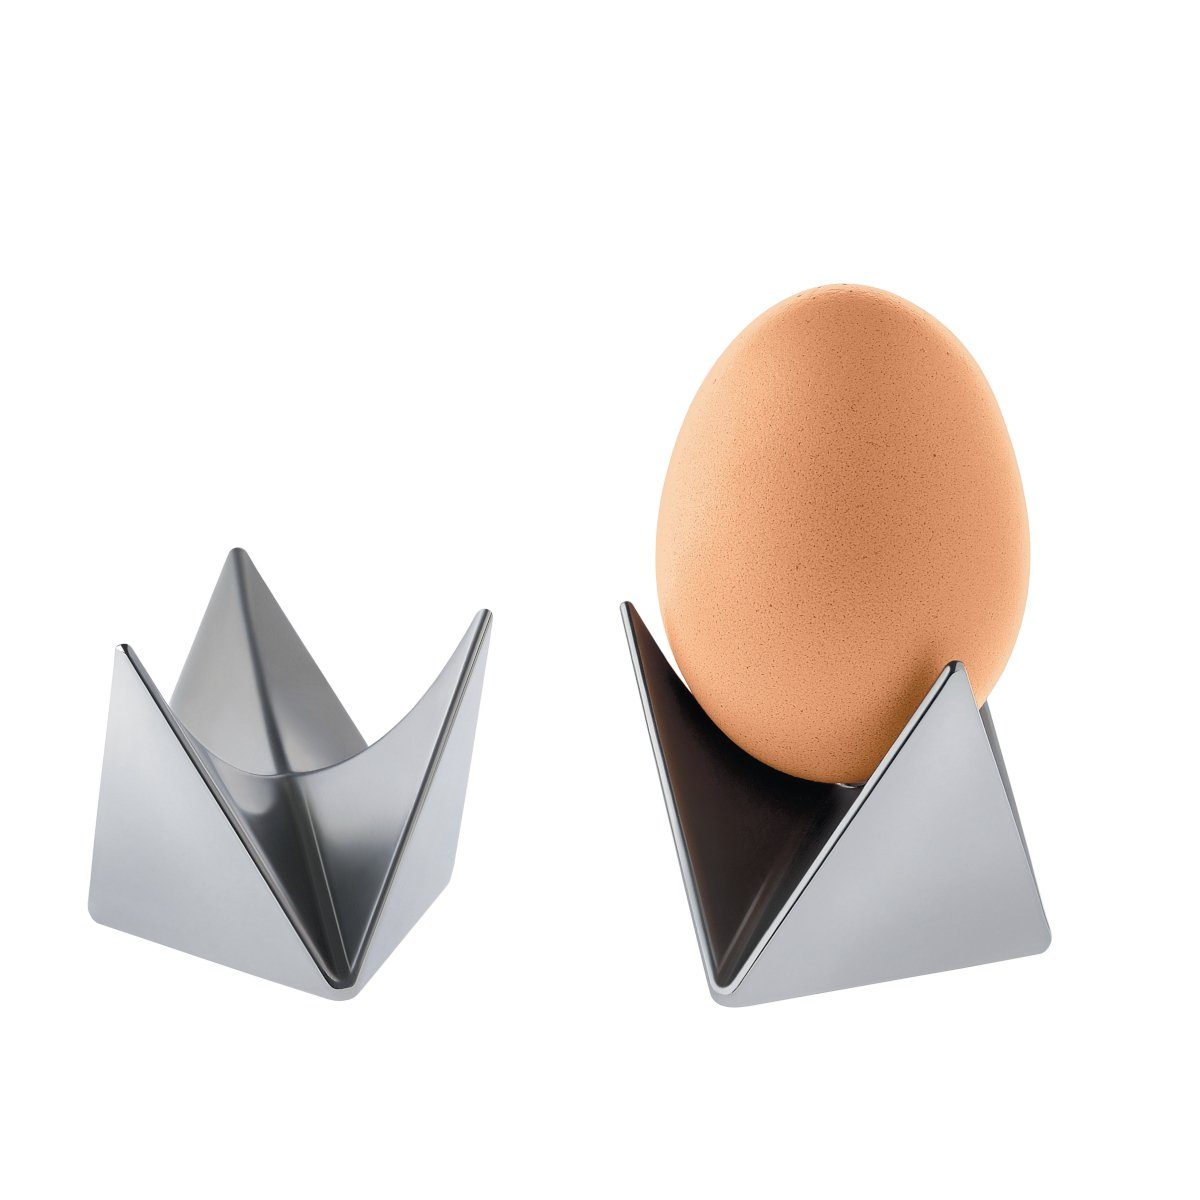 zusammenfügbare 2 Eierbecher Eierbecher Alessi ROOST, Eierbecher